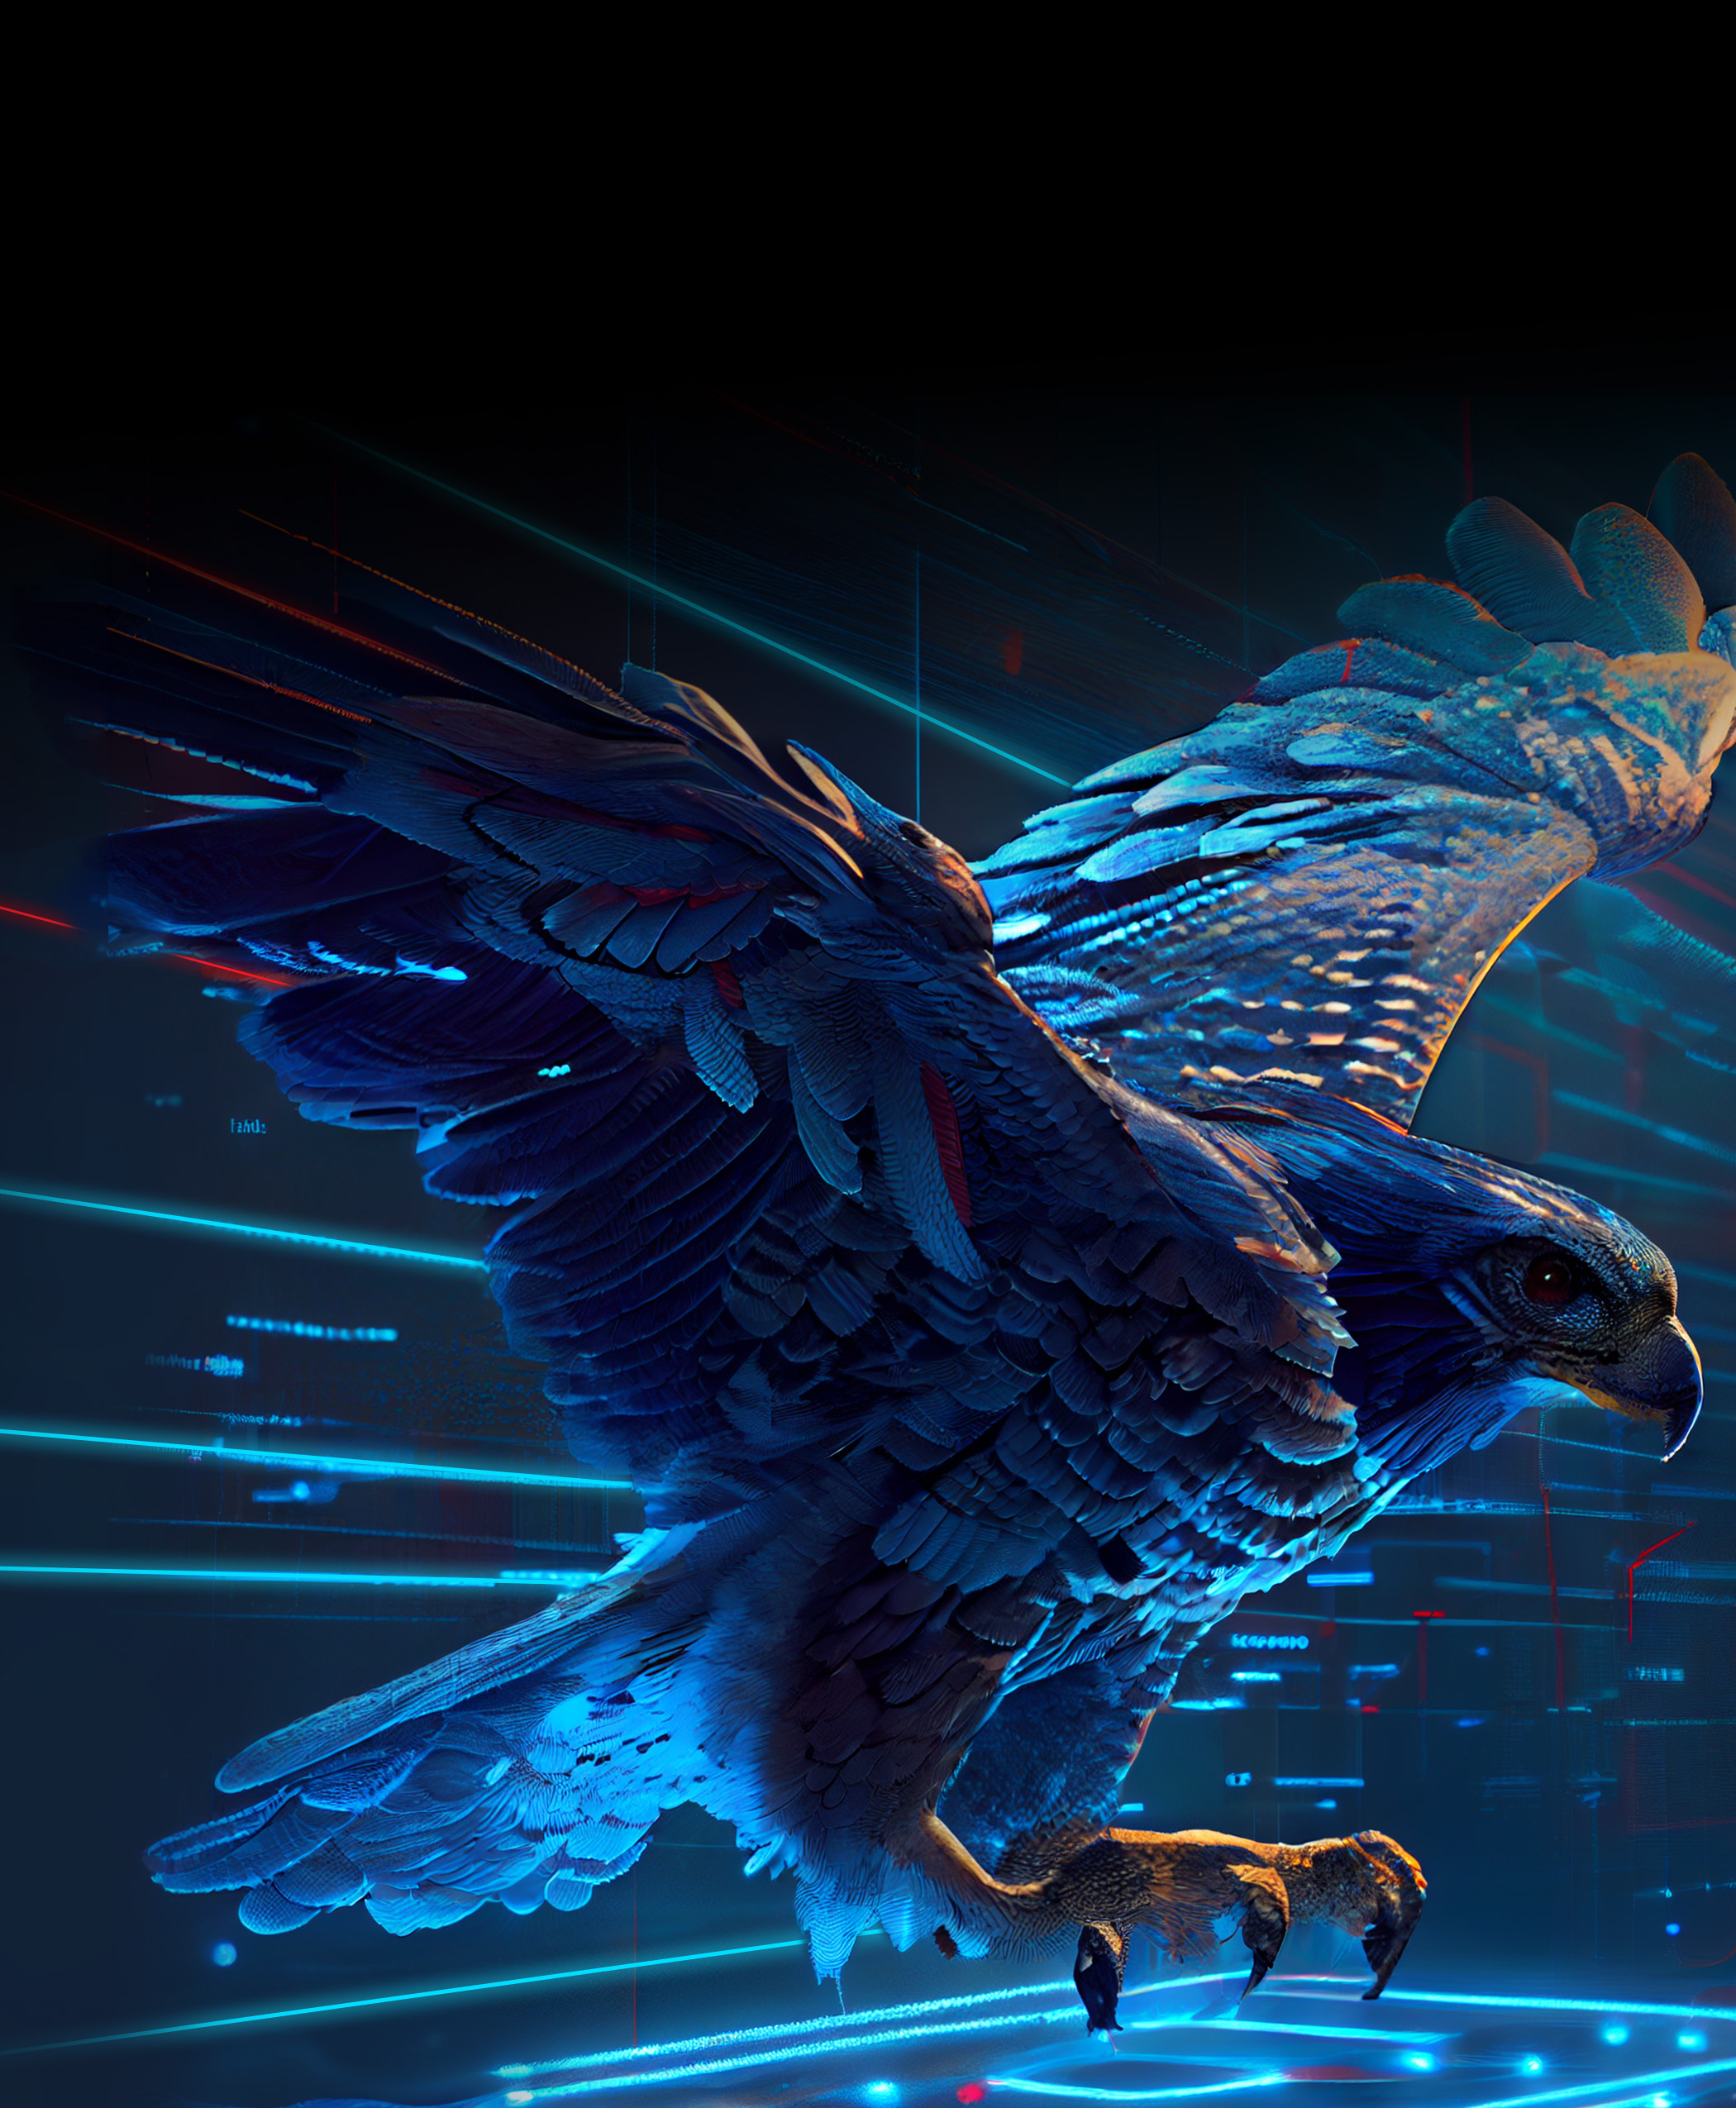 Blue digital falcon